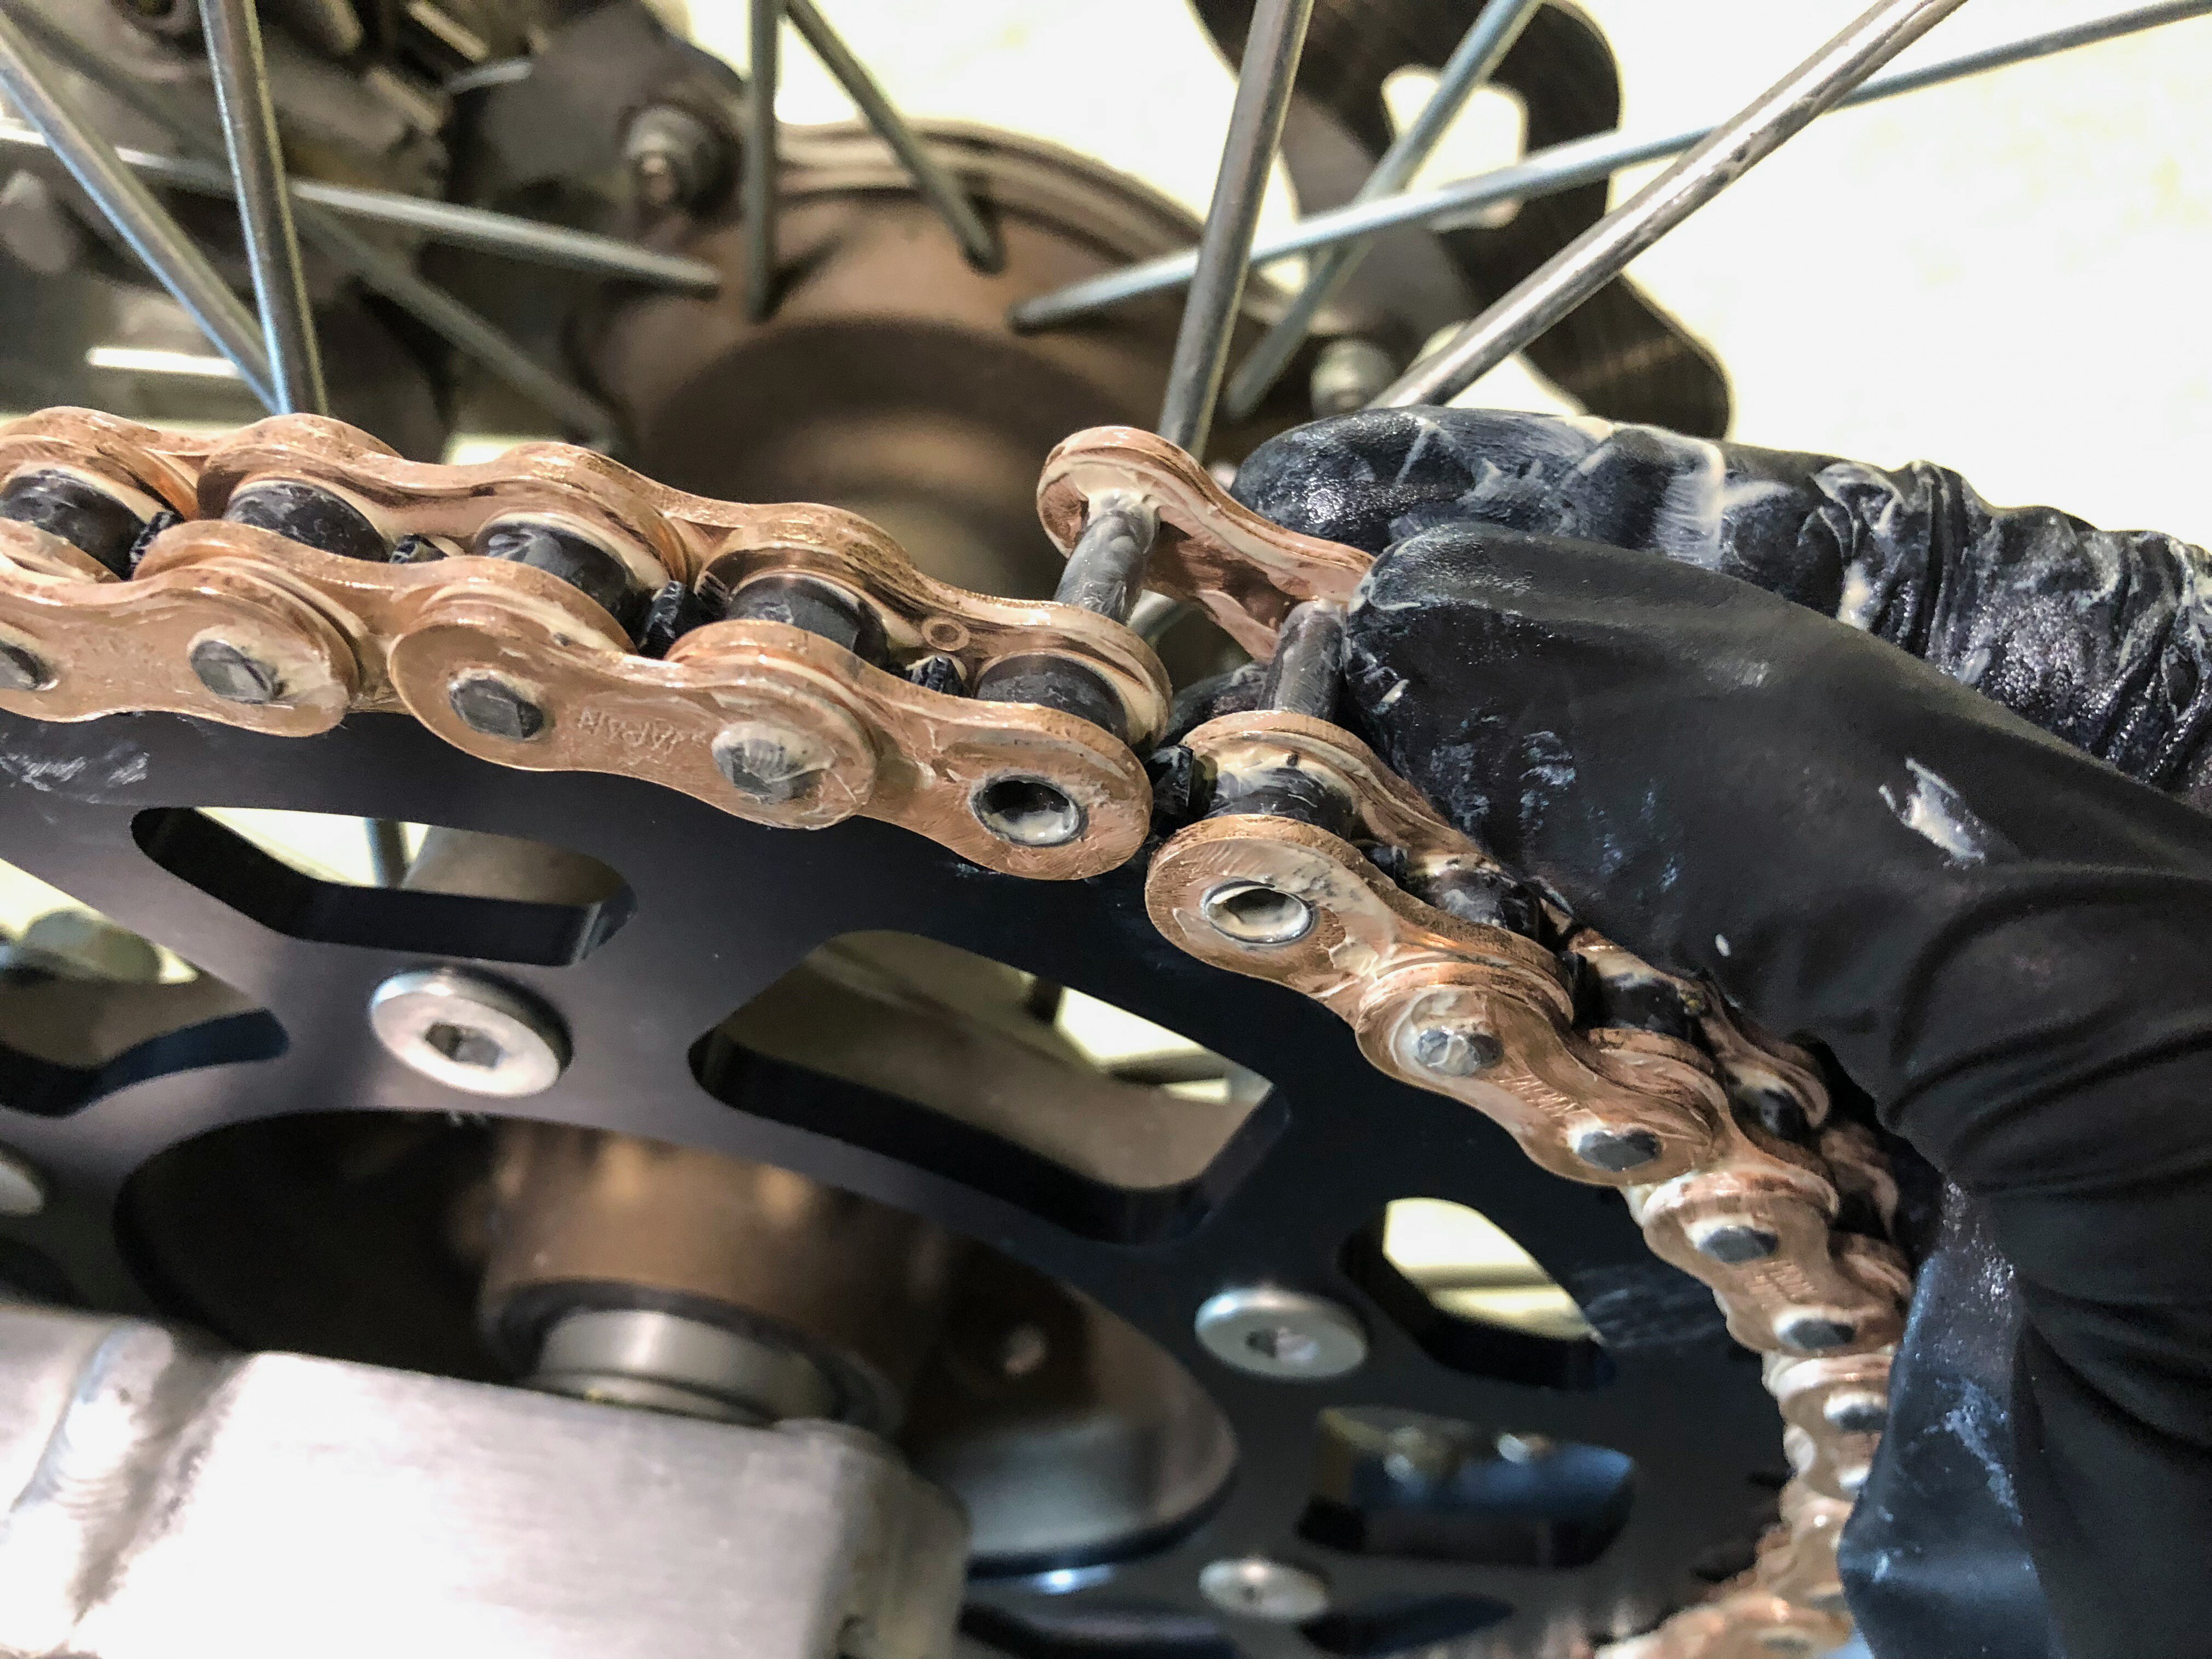 installing new chain on bike